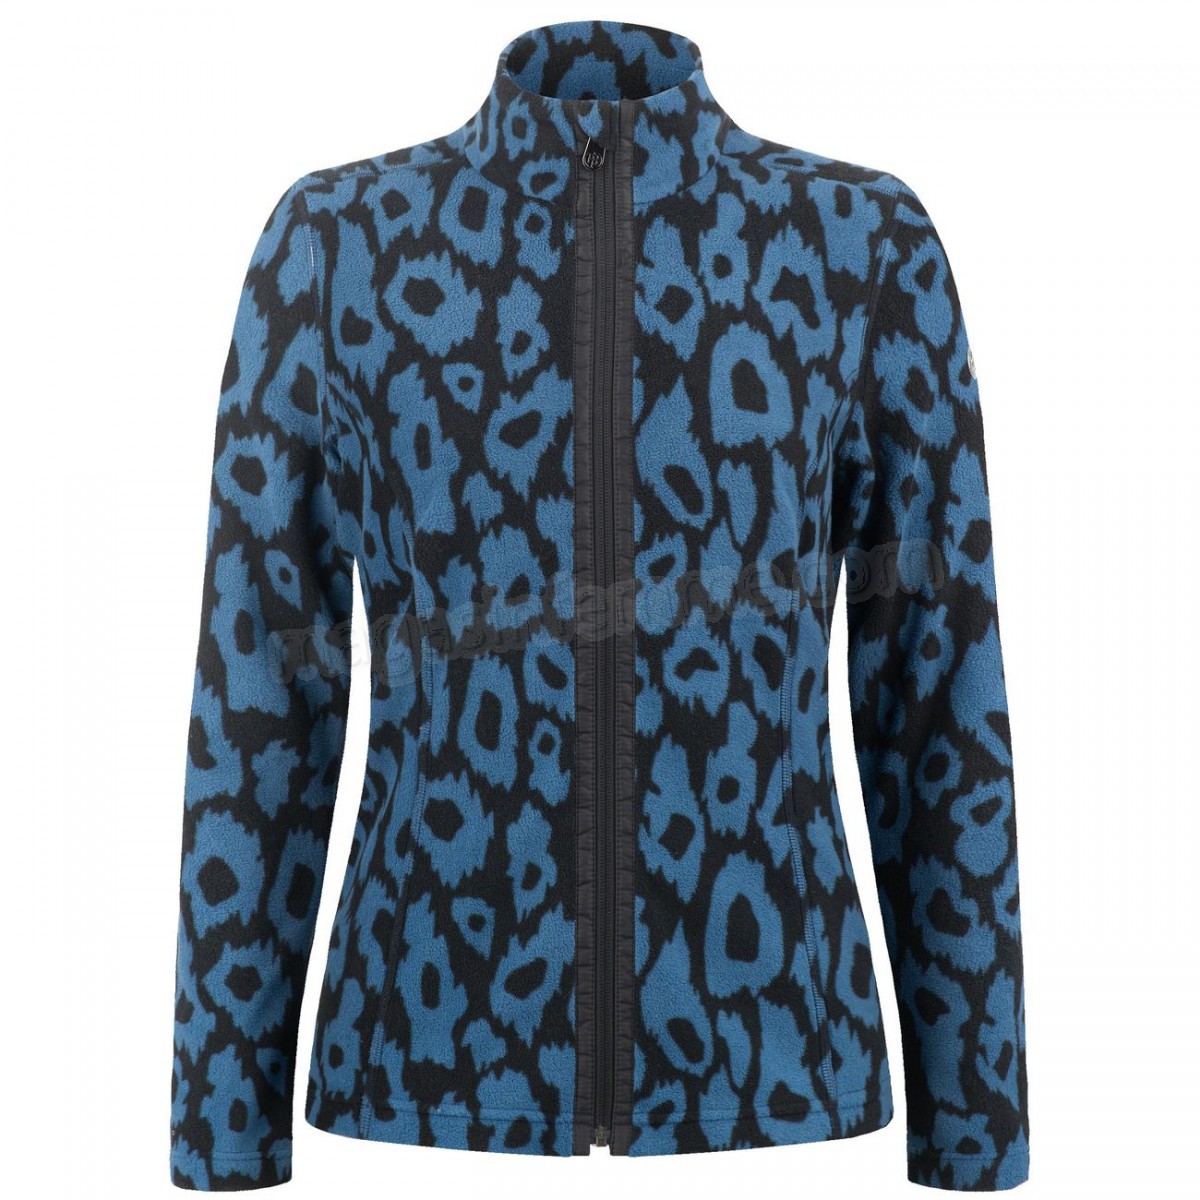 Poivre Blanc-Sports d'hiver femme POIVRE BLANC Veste Polaire Poivre Blanc Fleece Jacket 1500 Panther Blue Femme en solde - -0